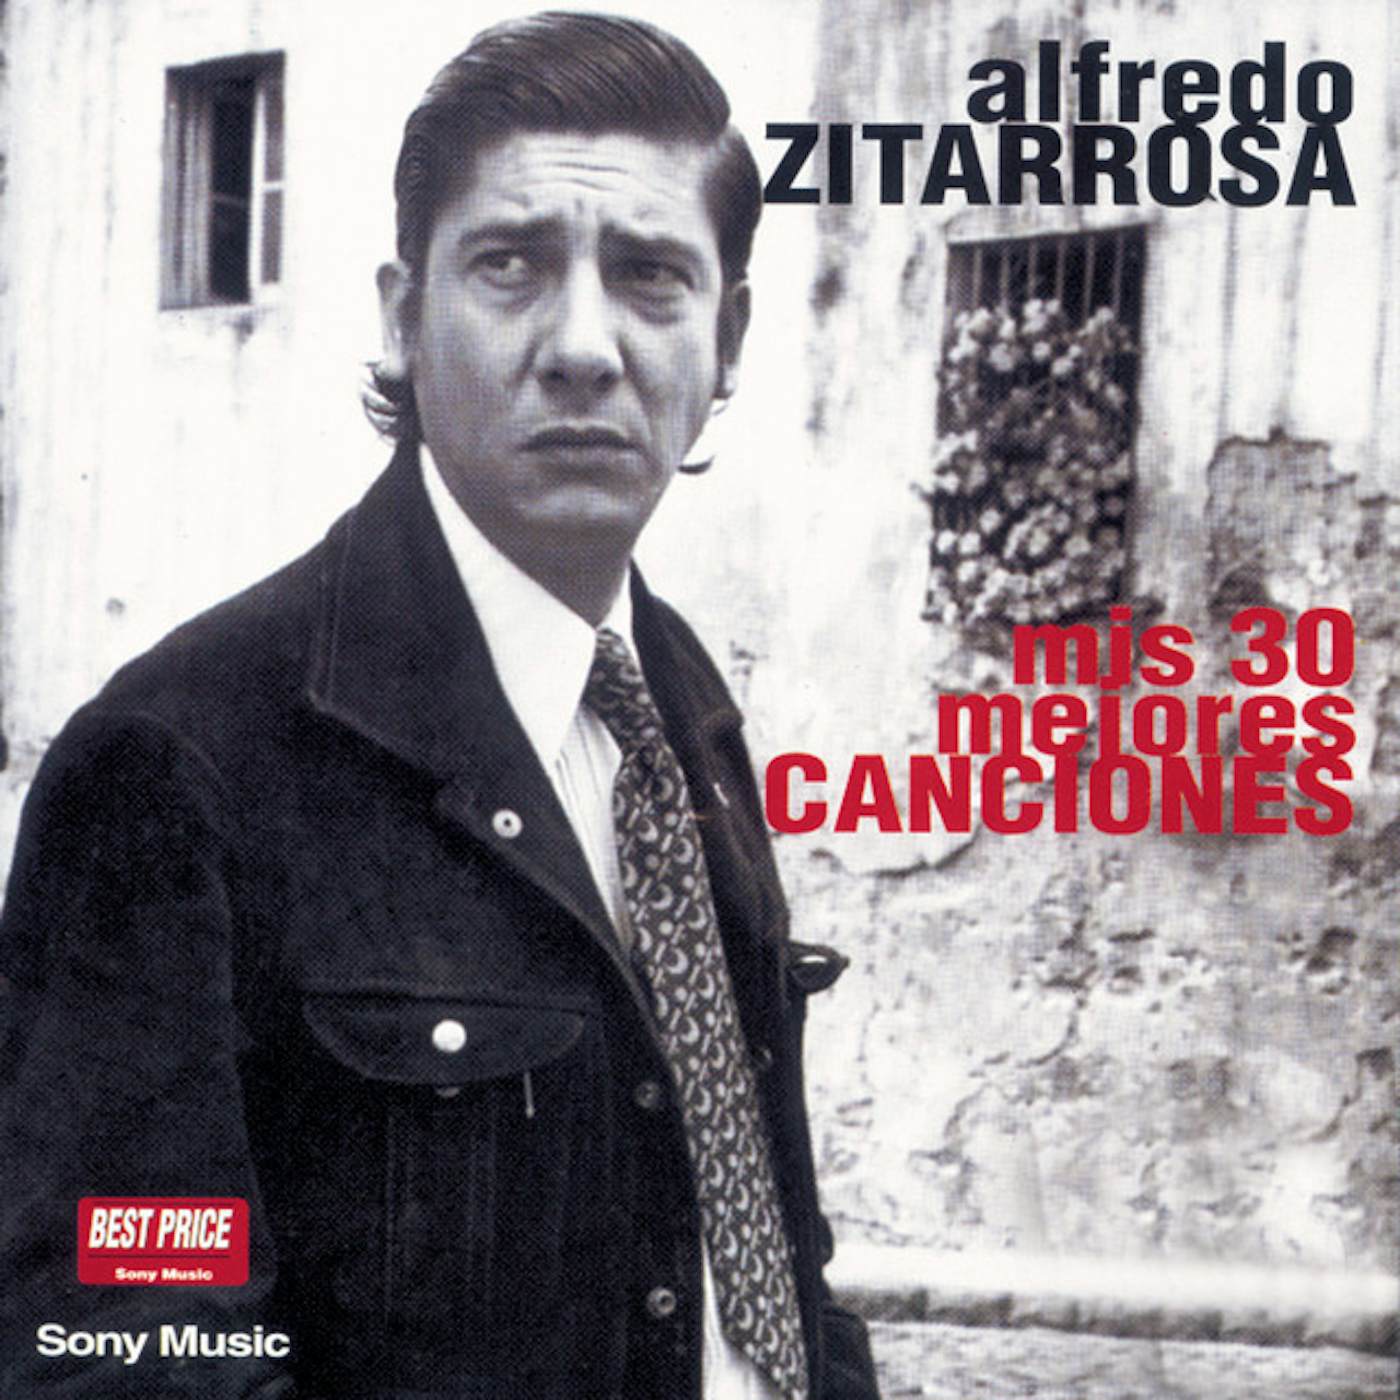 Alfredo Zitarrosa MIS MEJORES 30 CANCIONES CD